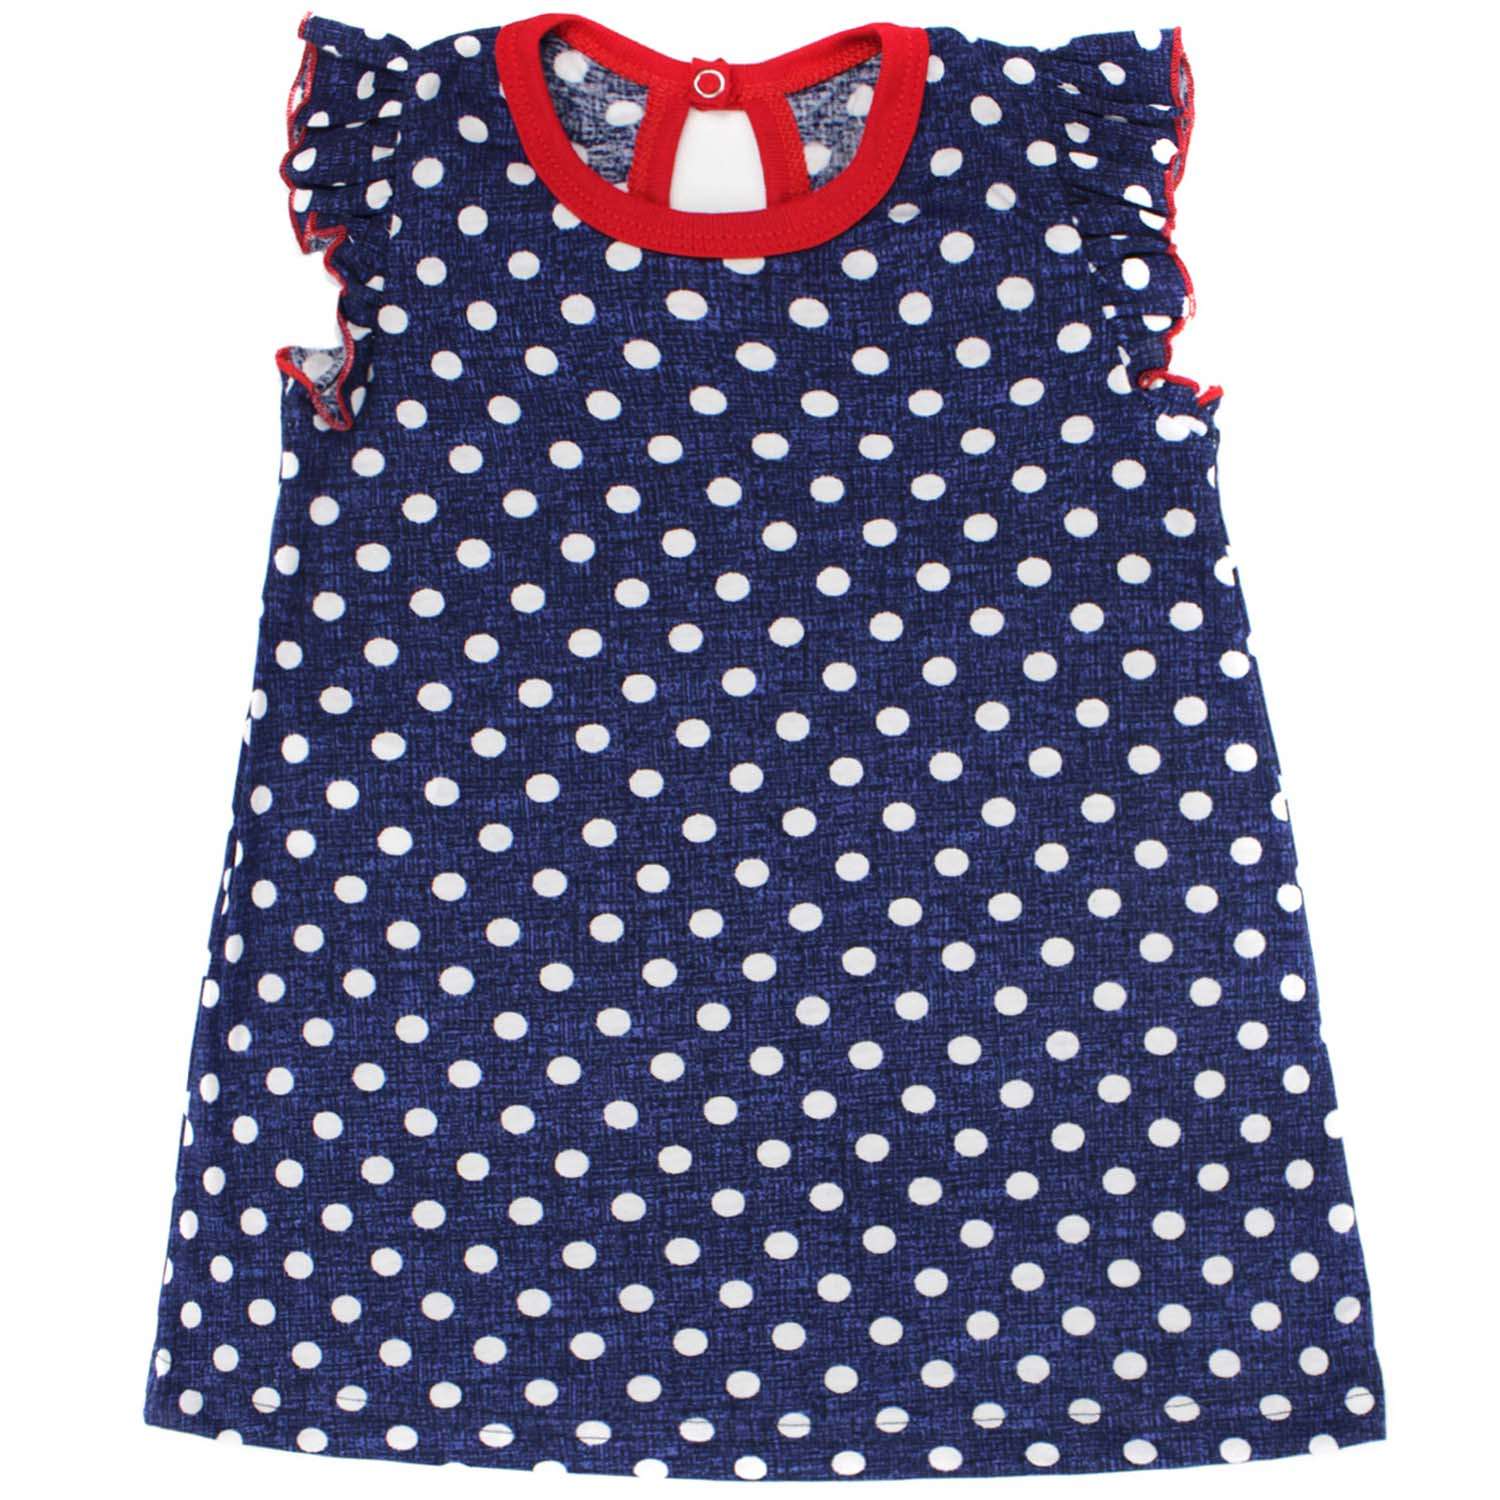 Платье Babycollection 00-00025432синий,белый,красный - фото 2